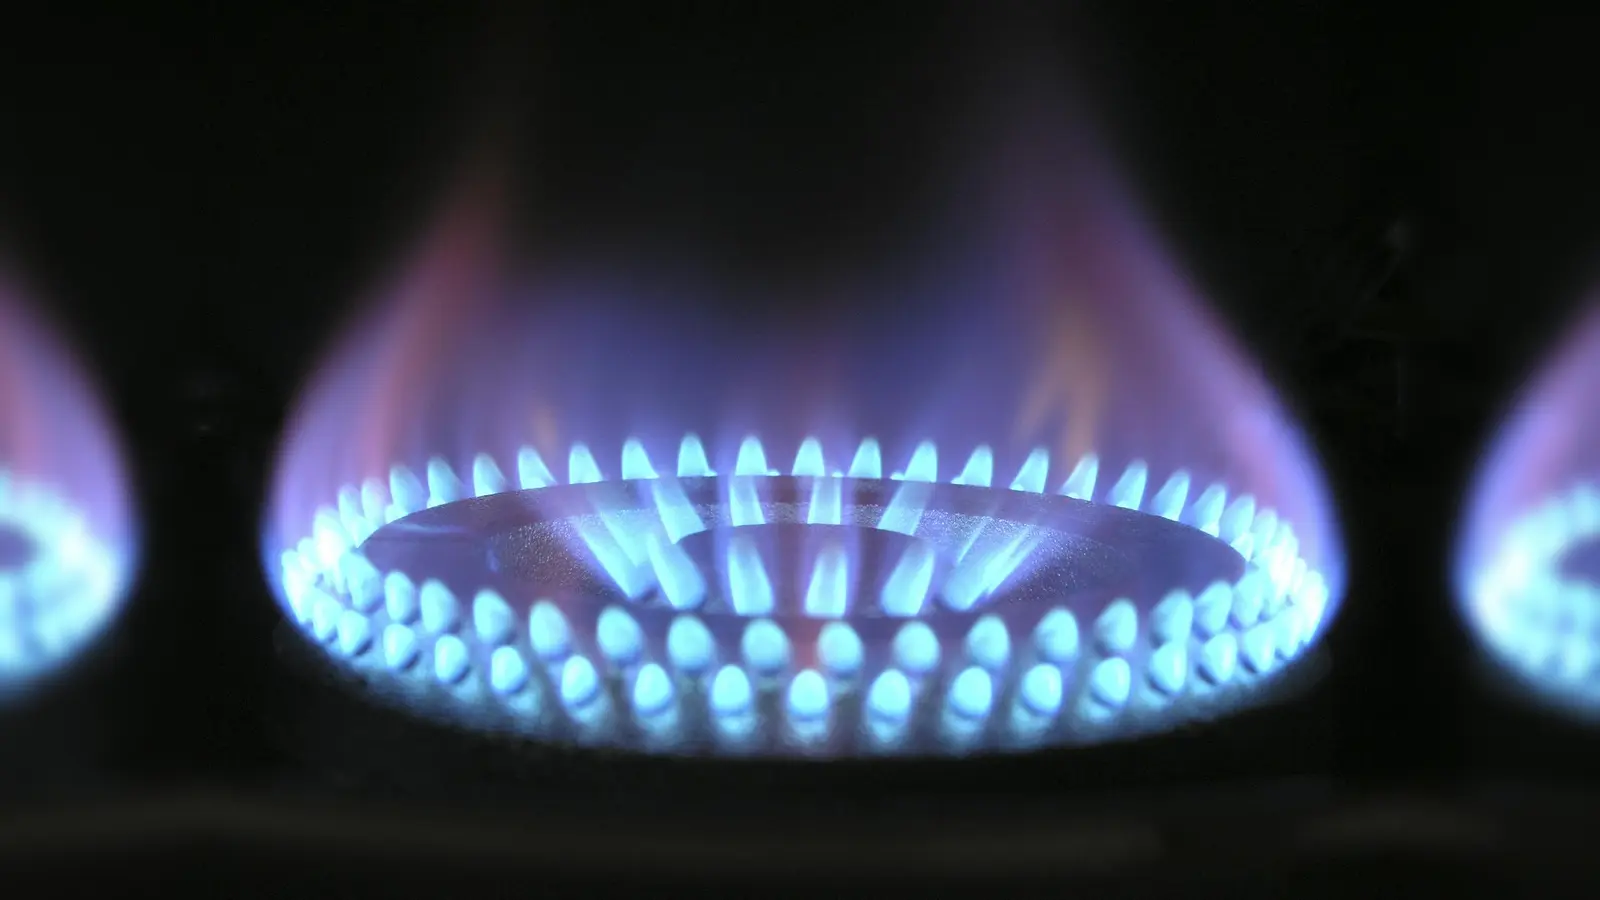 Das BMWK gibt Tipps zur Gasreduzierung. (Foto: pixabay)